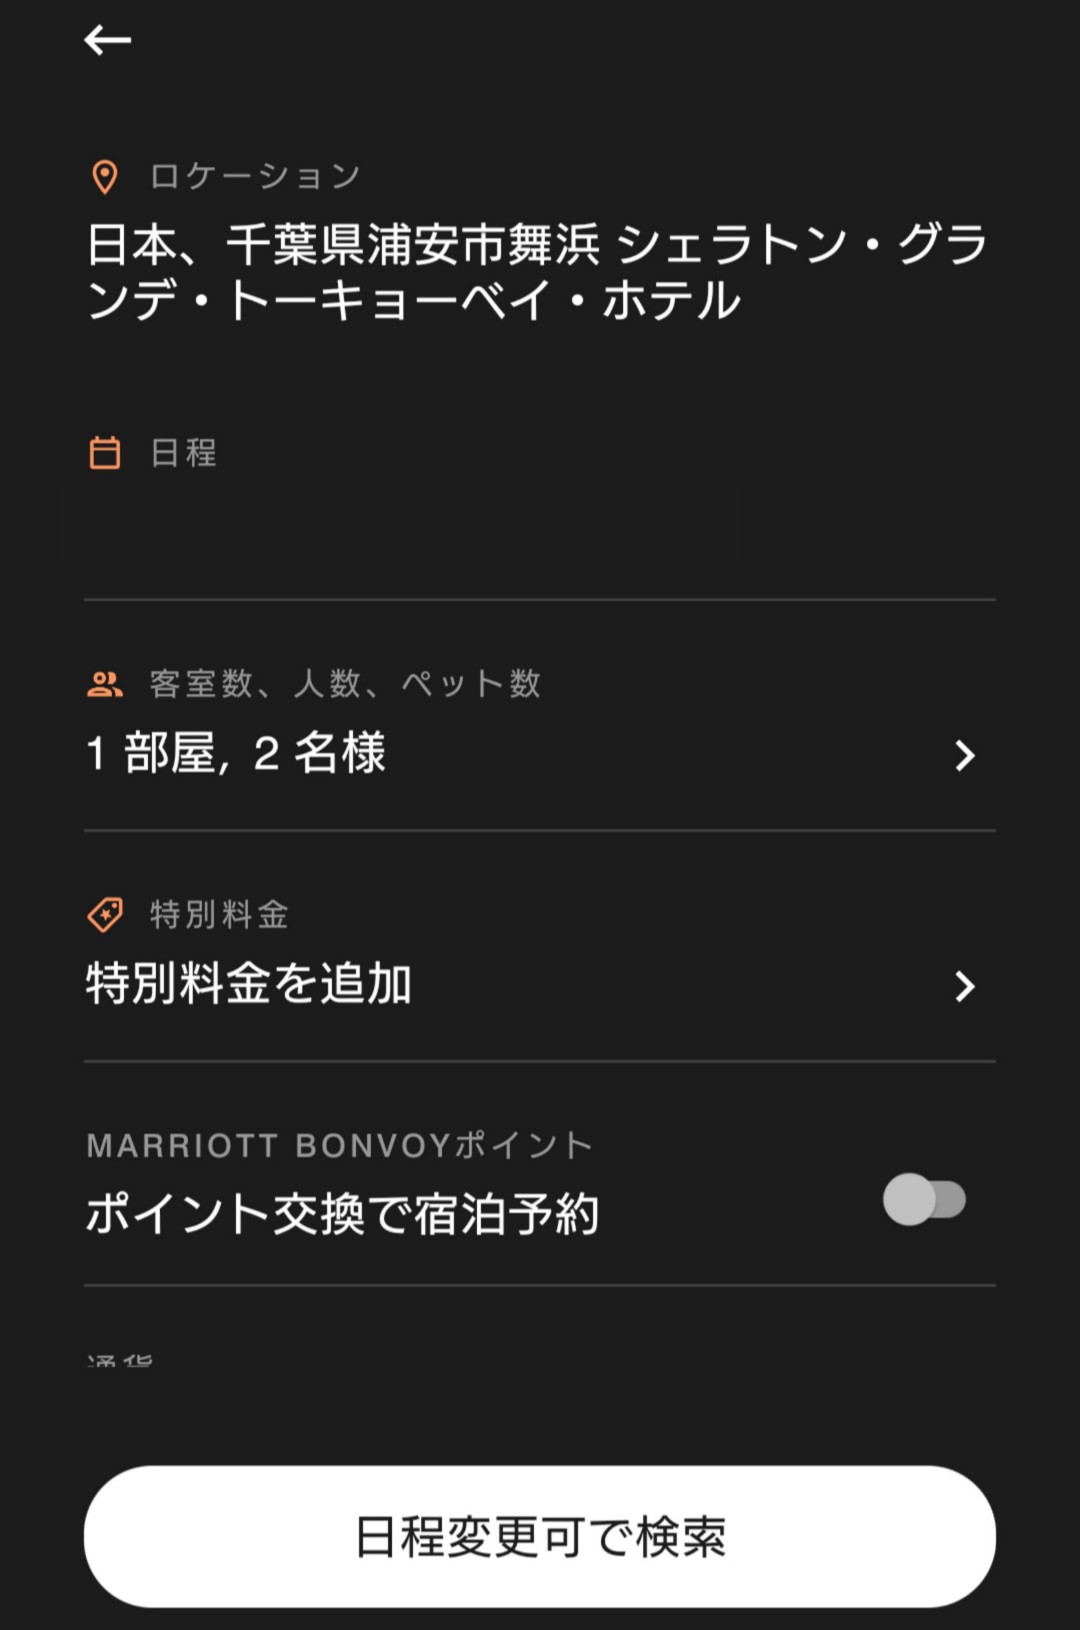 マリオット公式サイト(アプリ)からホテル予約